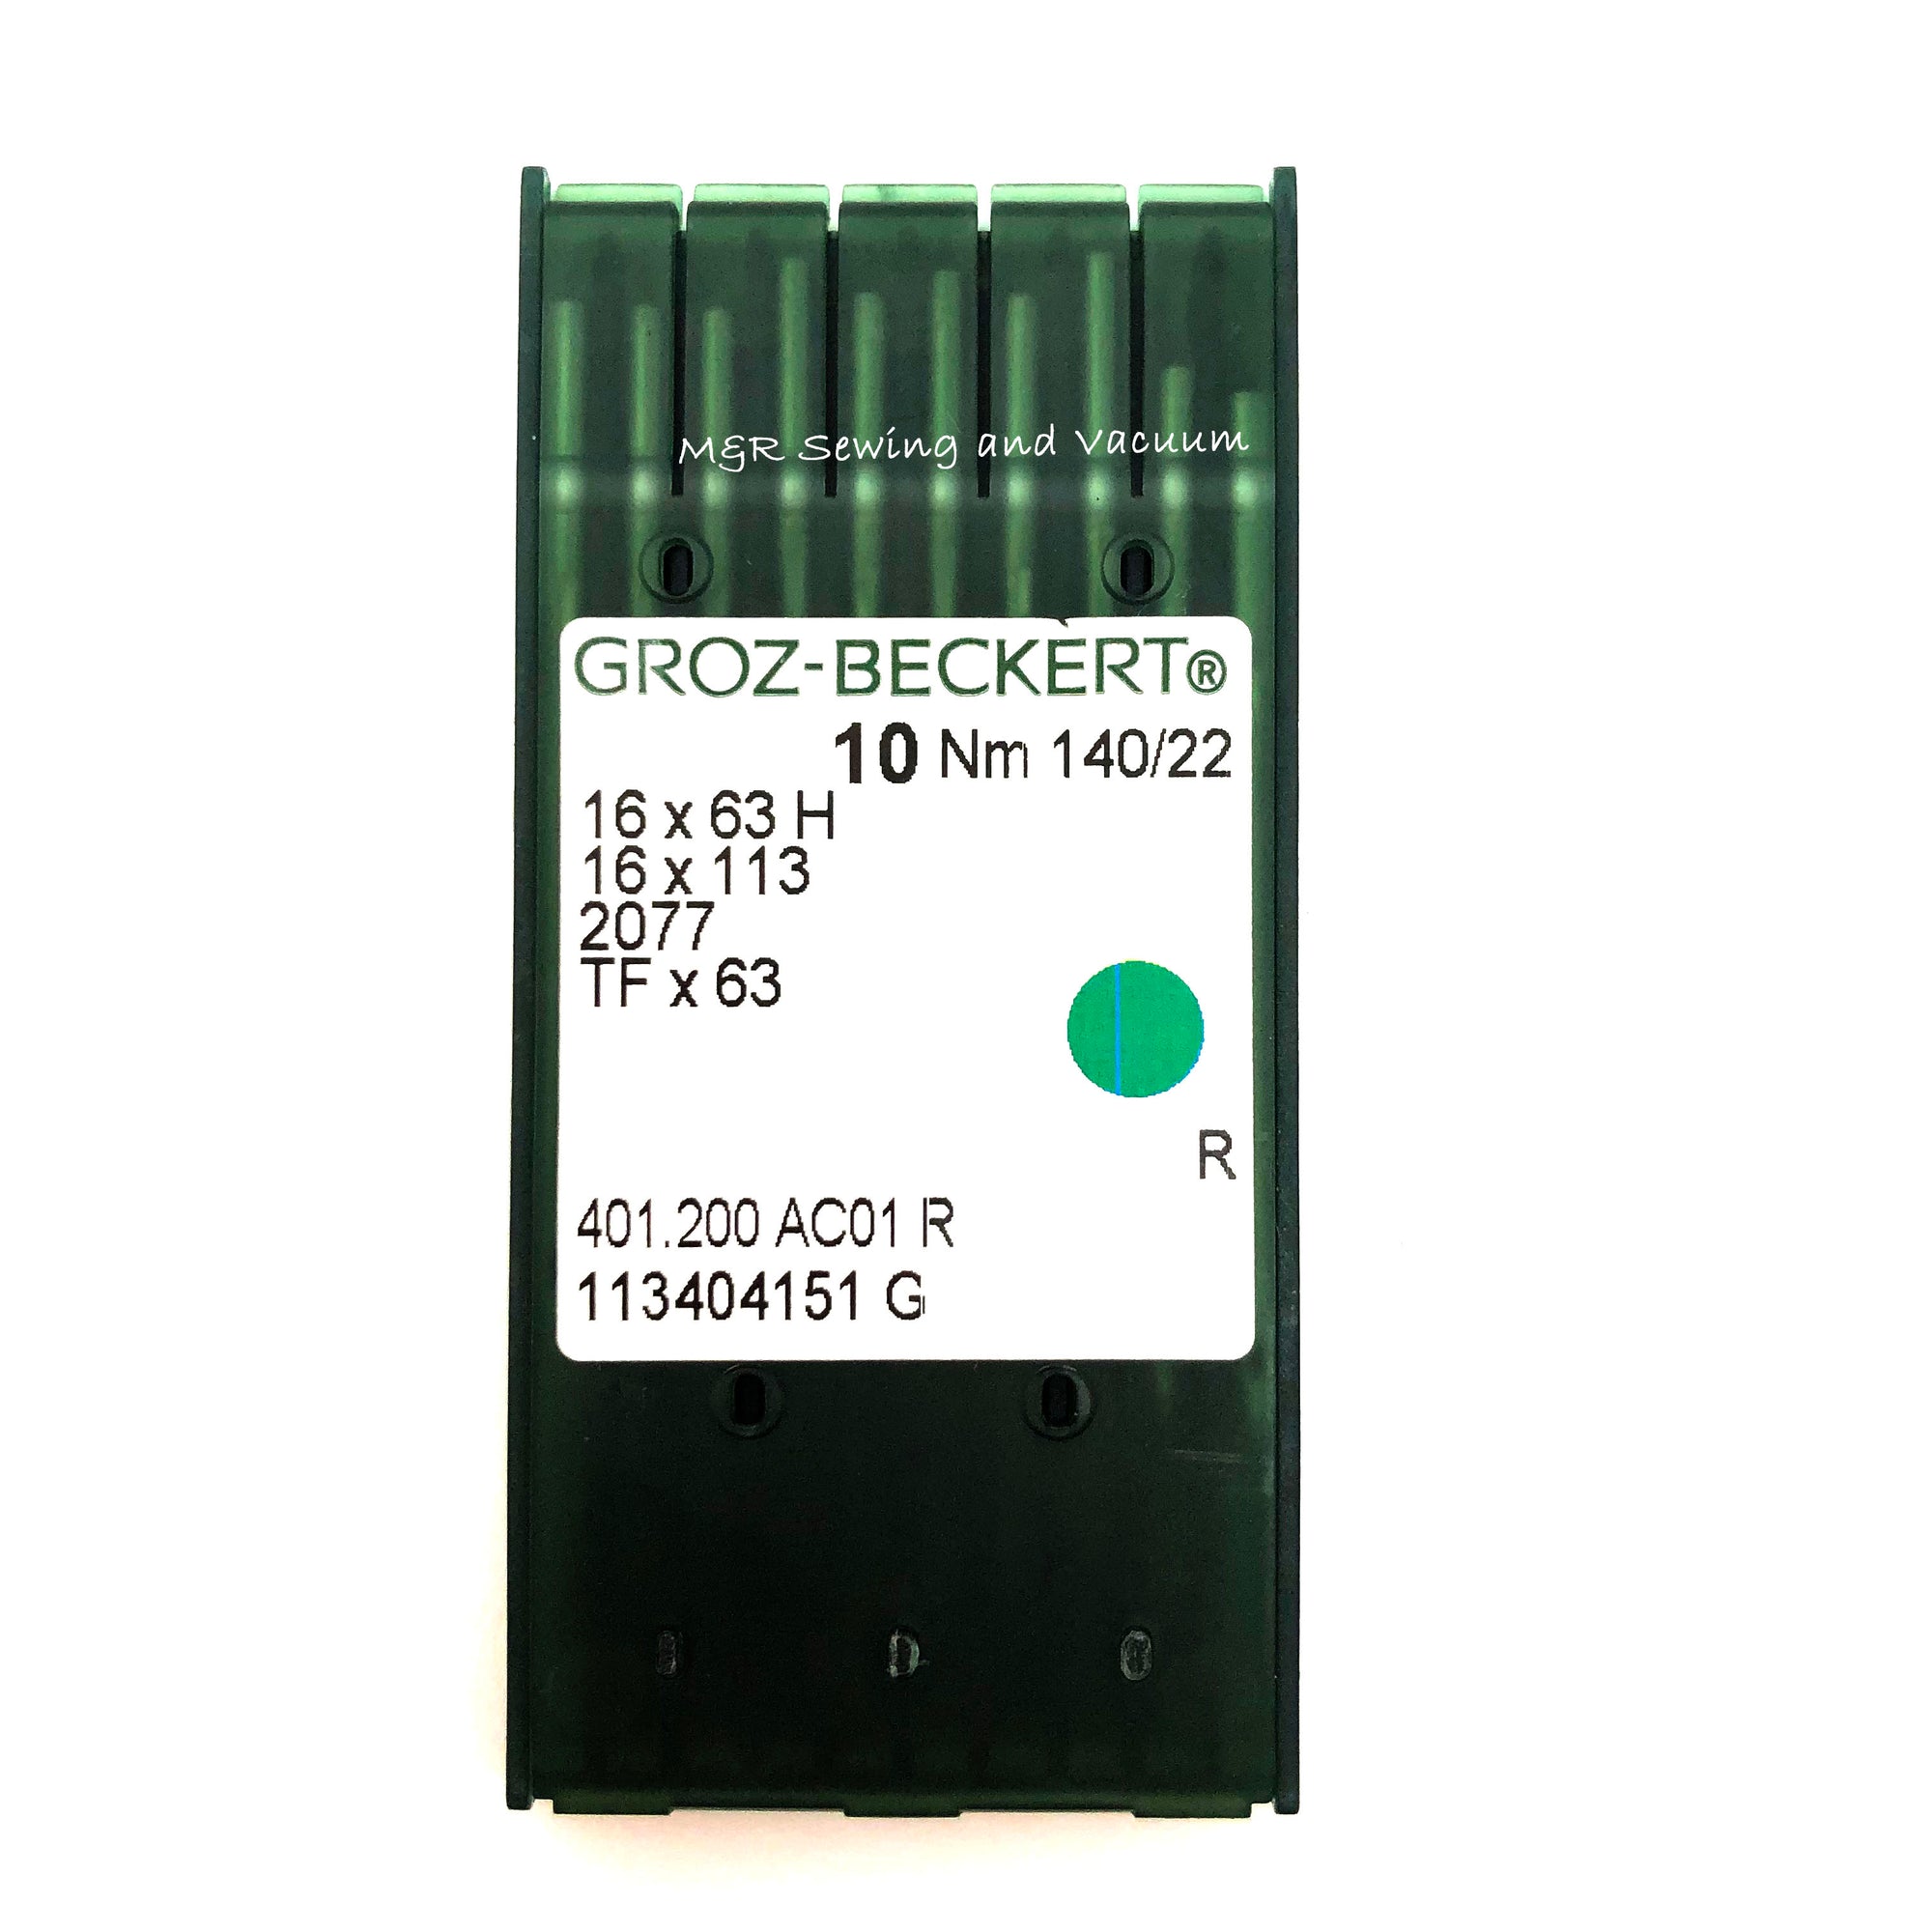 Groz-Beckert 16x63H (TFx63) Industrial Needles - 140/22